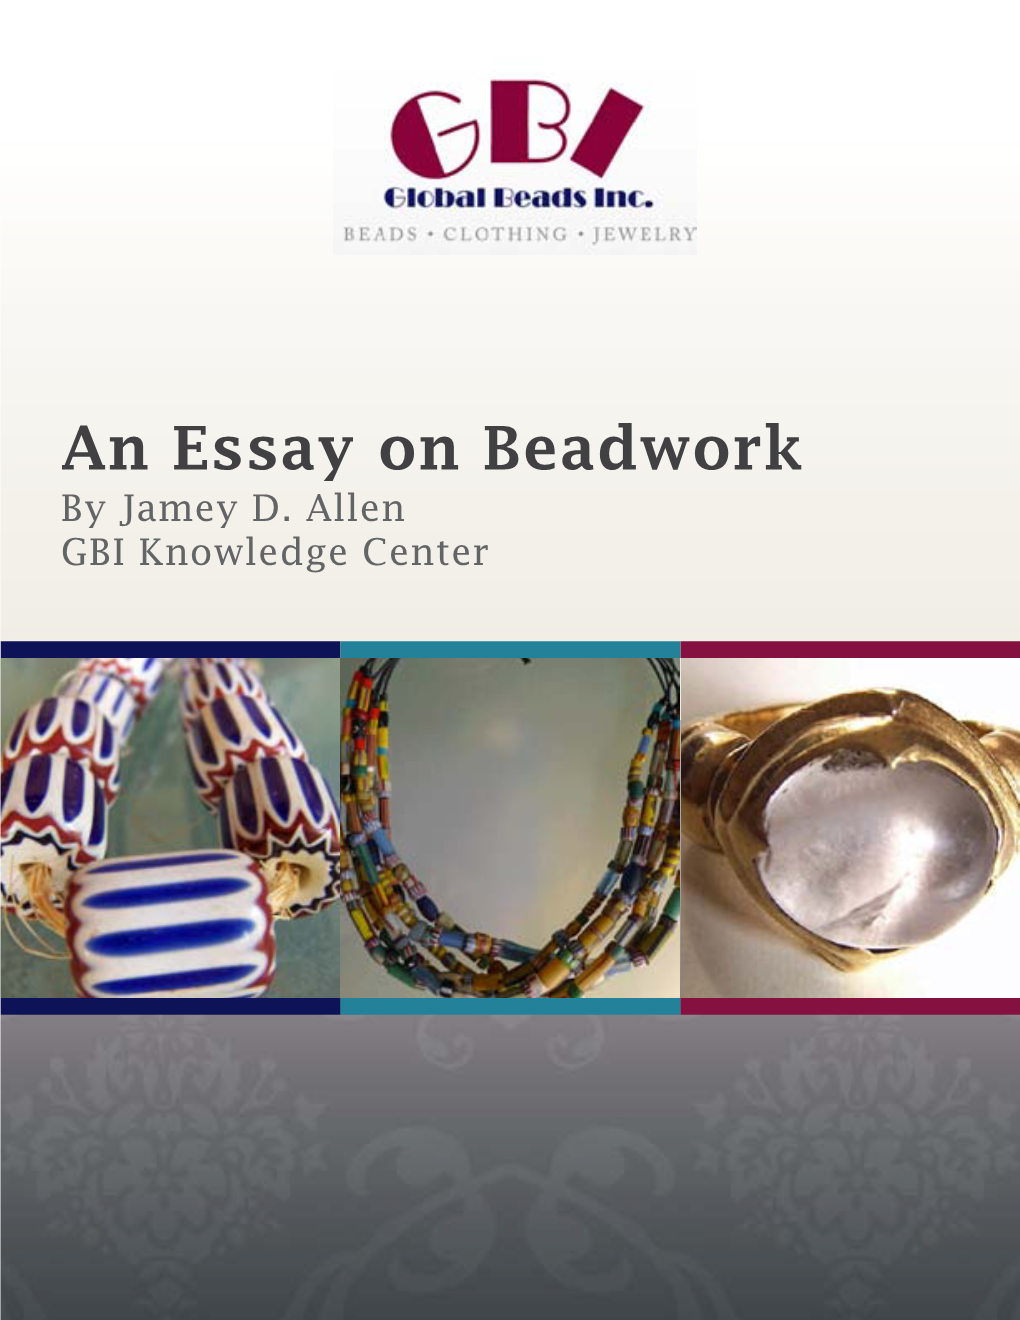 An Essay on Beadwork by Jamey D